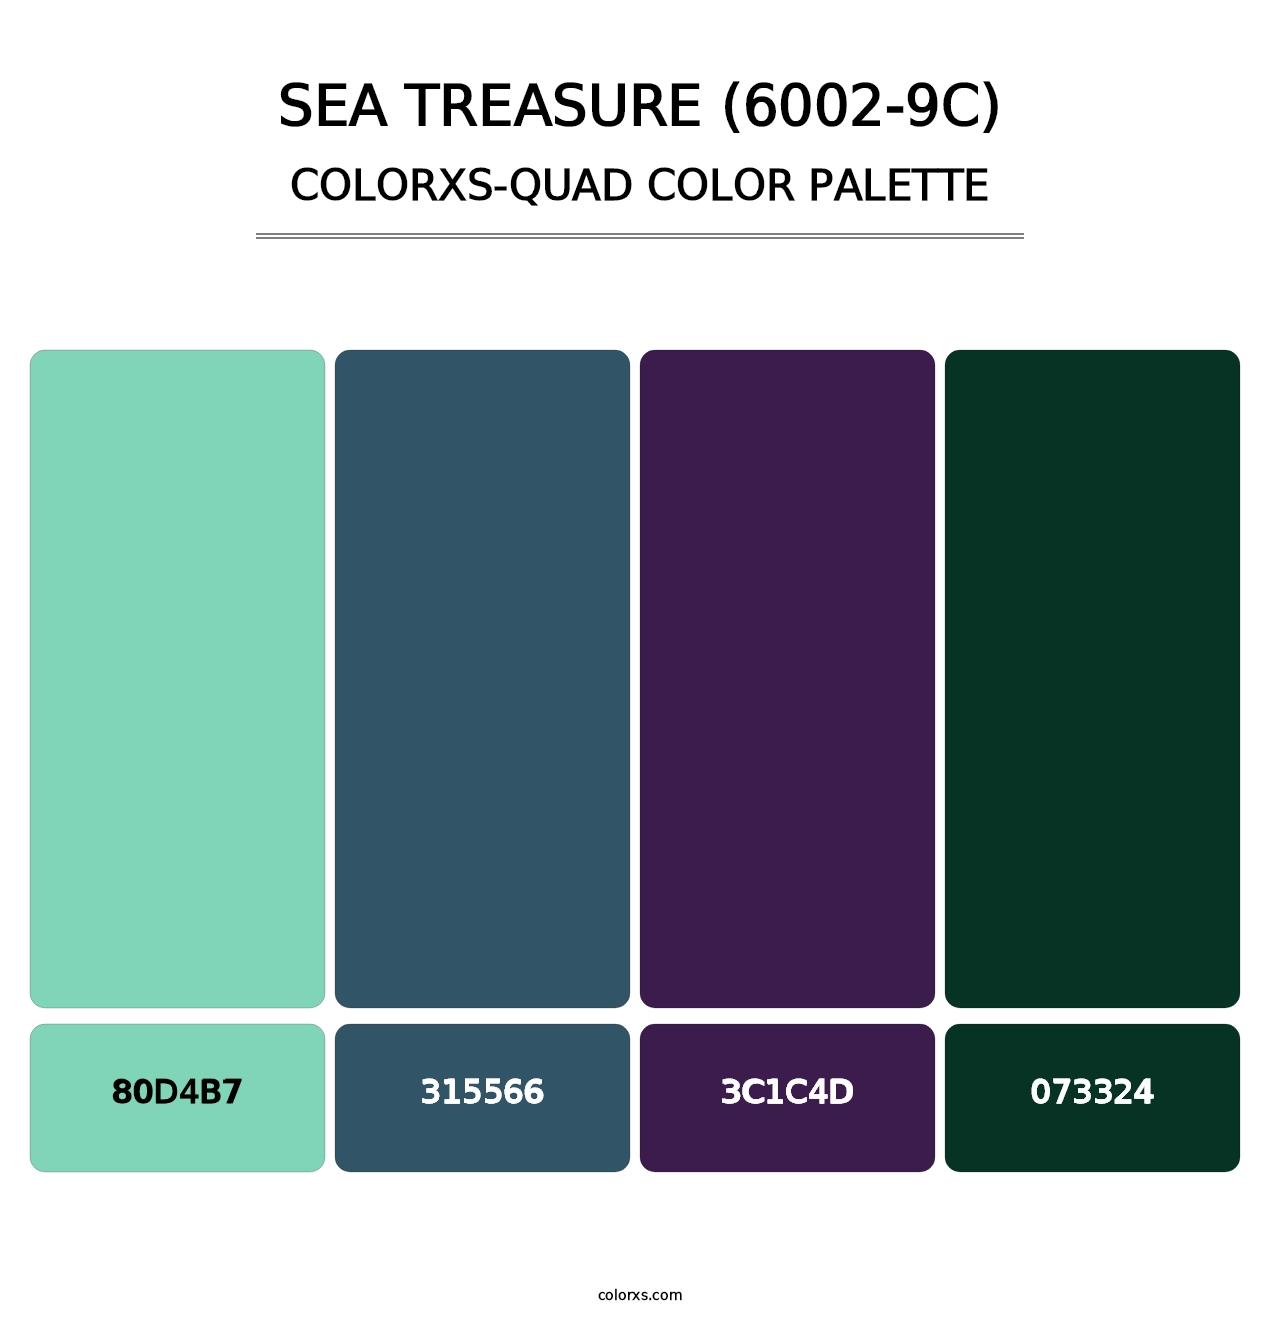 Sea Treasure (6002-9C) - Colorxs Quad Palette